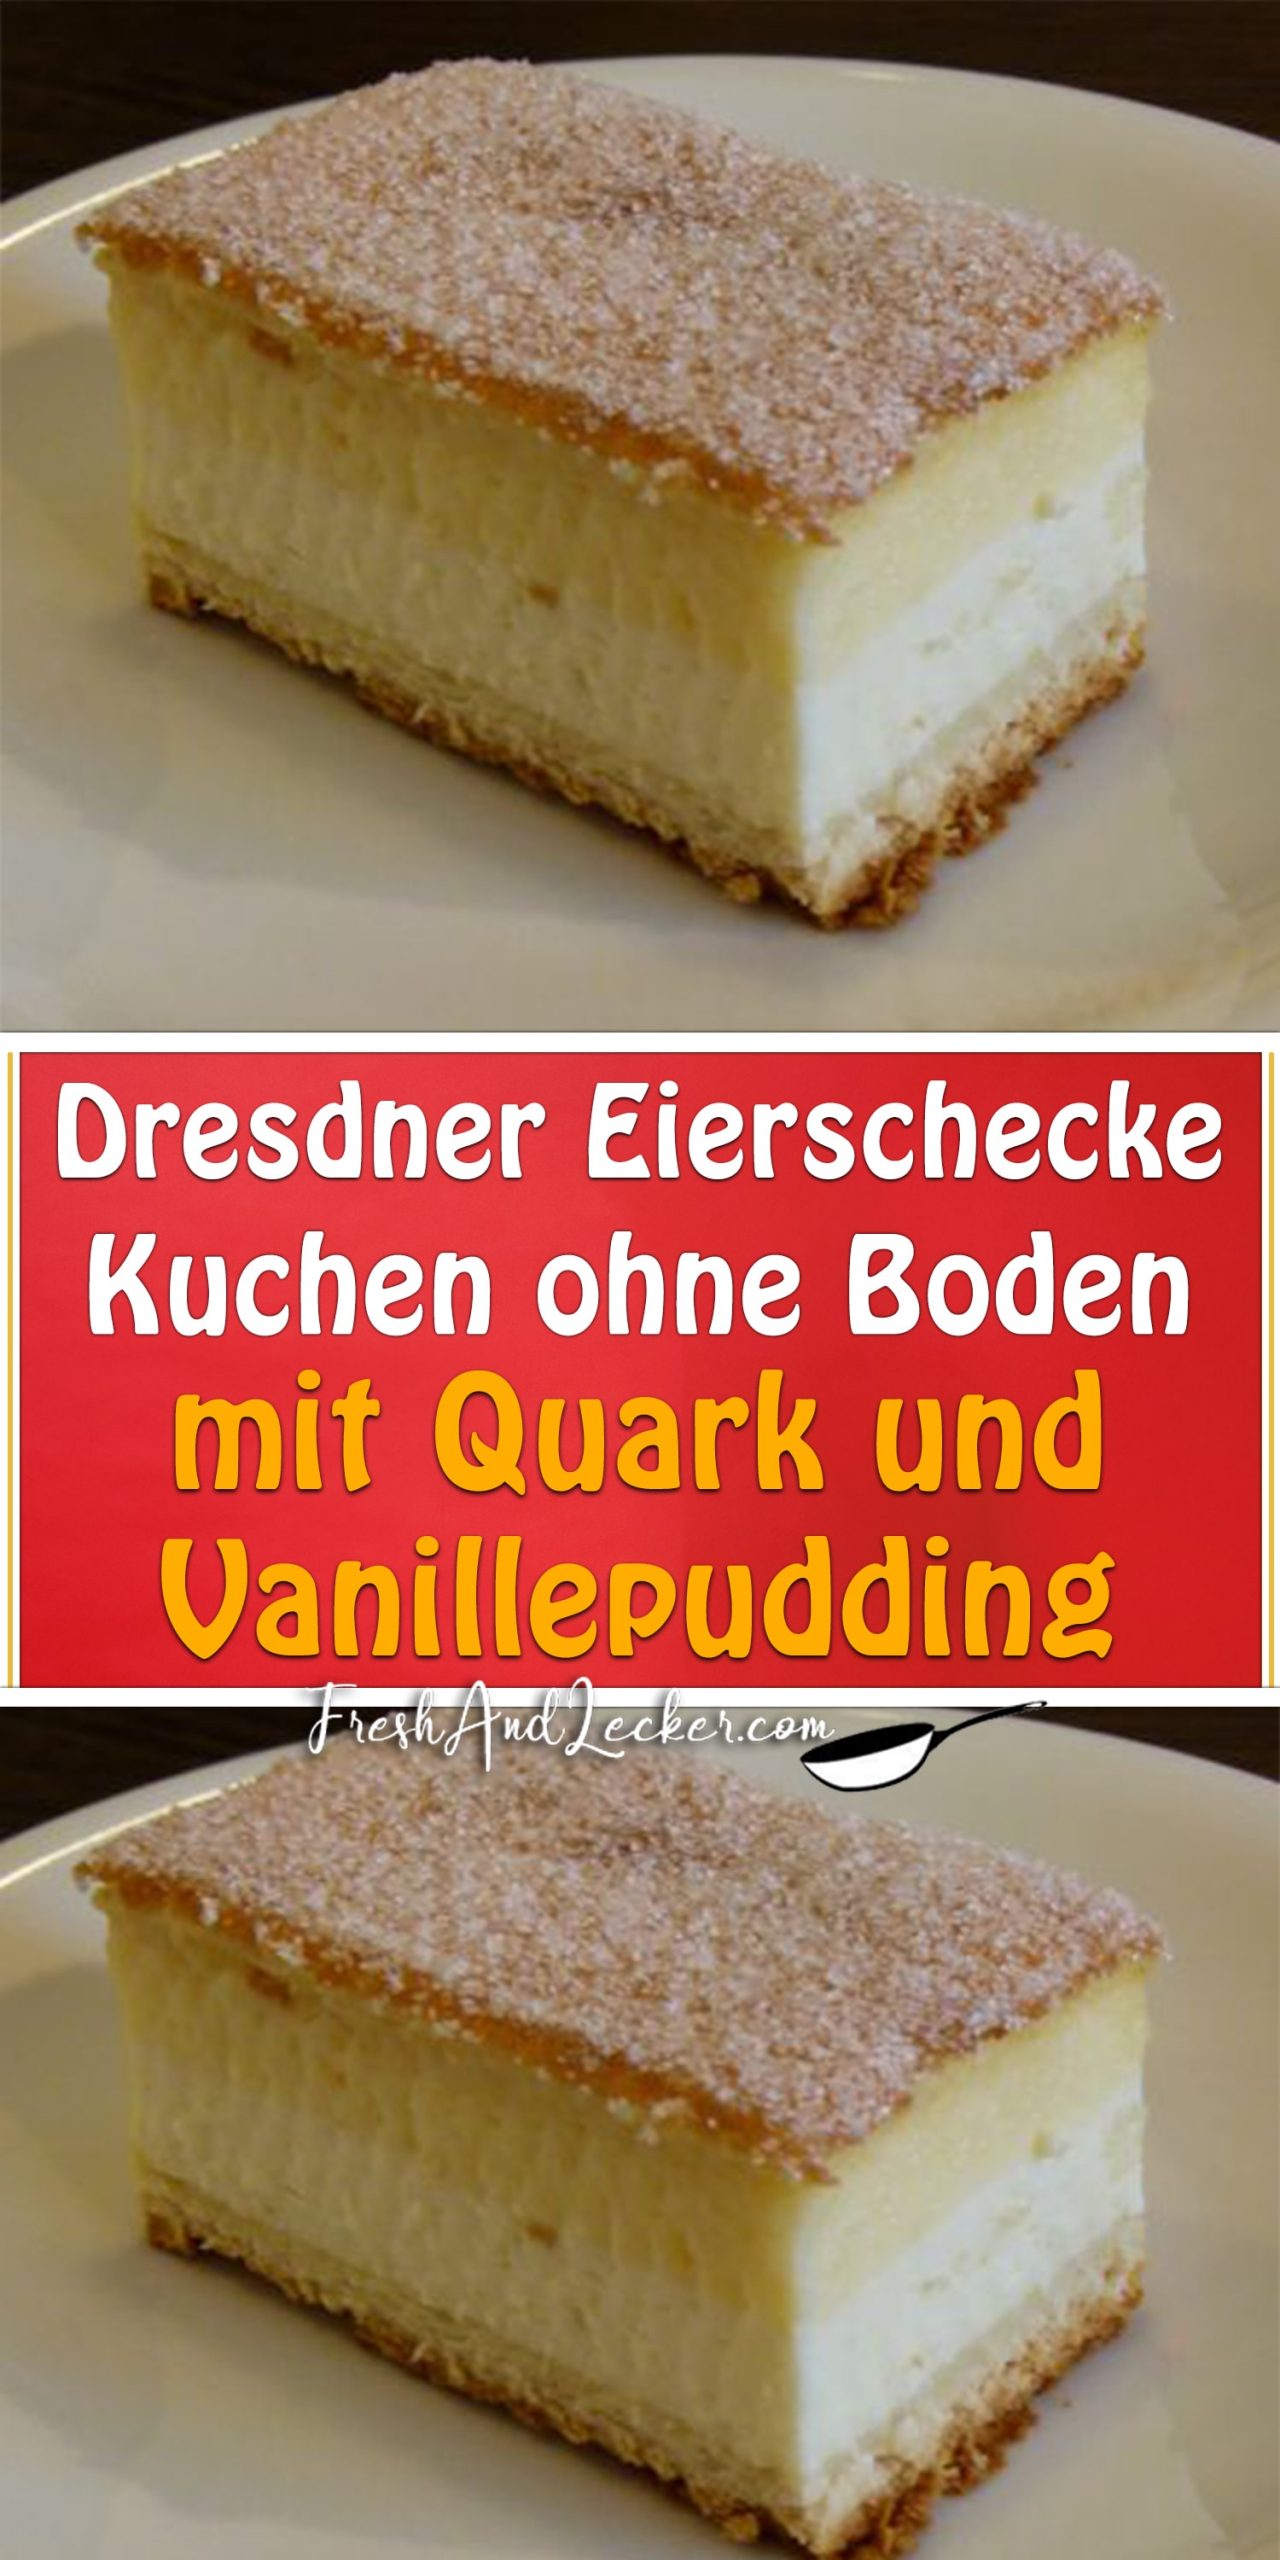 Dresdner Eierschecke - Kuchen ohne Boden mit Quark und Vanillepudding ...